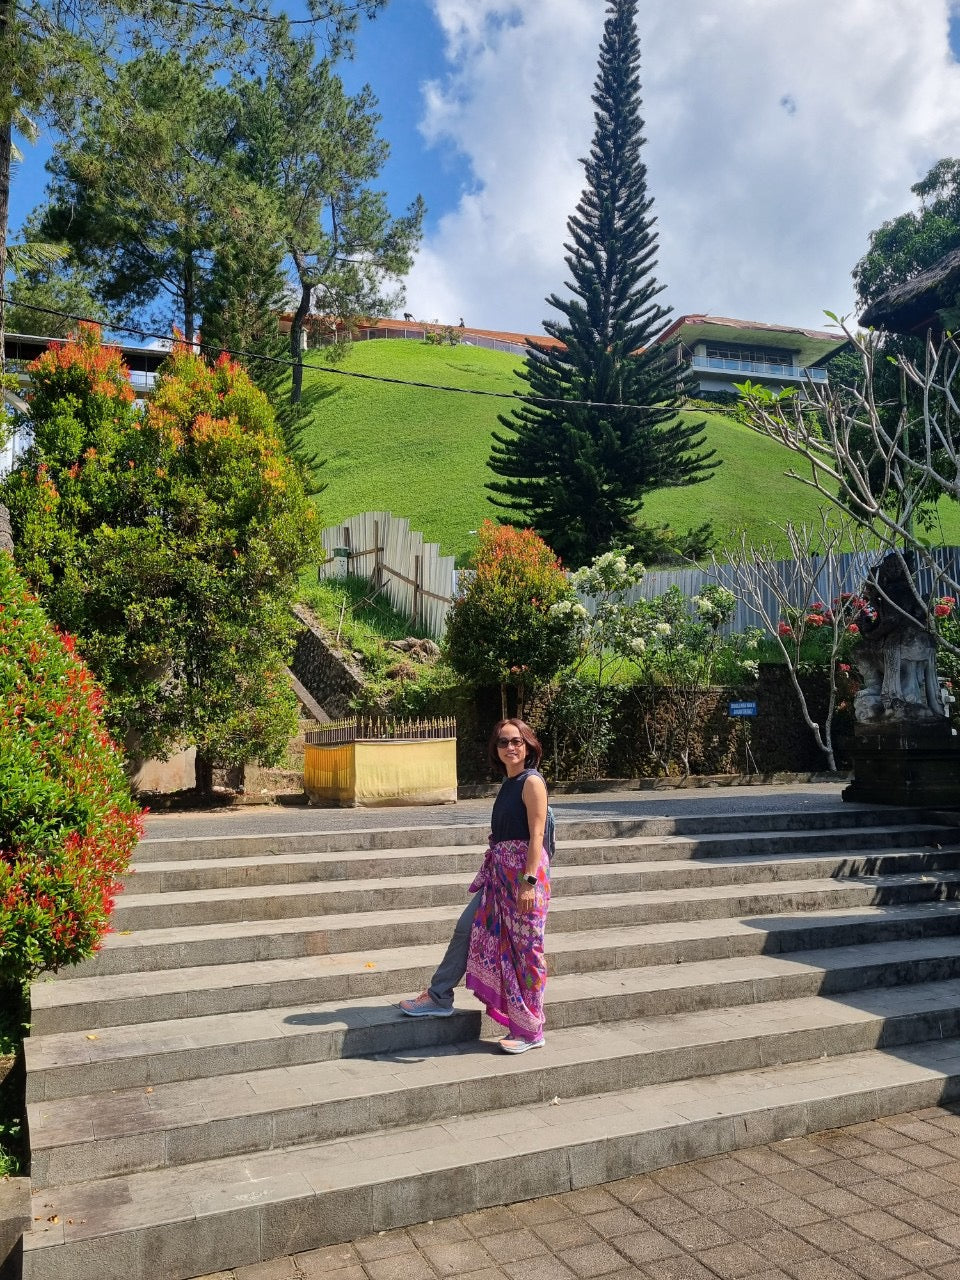 A8C: (3 NGÀY) Cuộc phiêu lưu ở Bali! Kỳ quan thiên nhiên kêu gọi với những đỉnh núi lửa hùng vĩ, kho báu bãi biển và ngôi đền nước thiêng